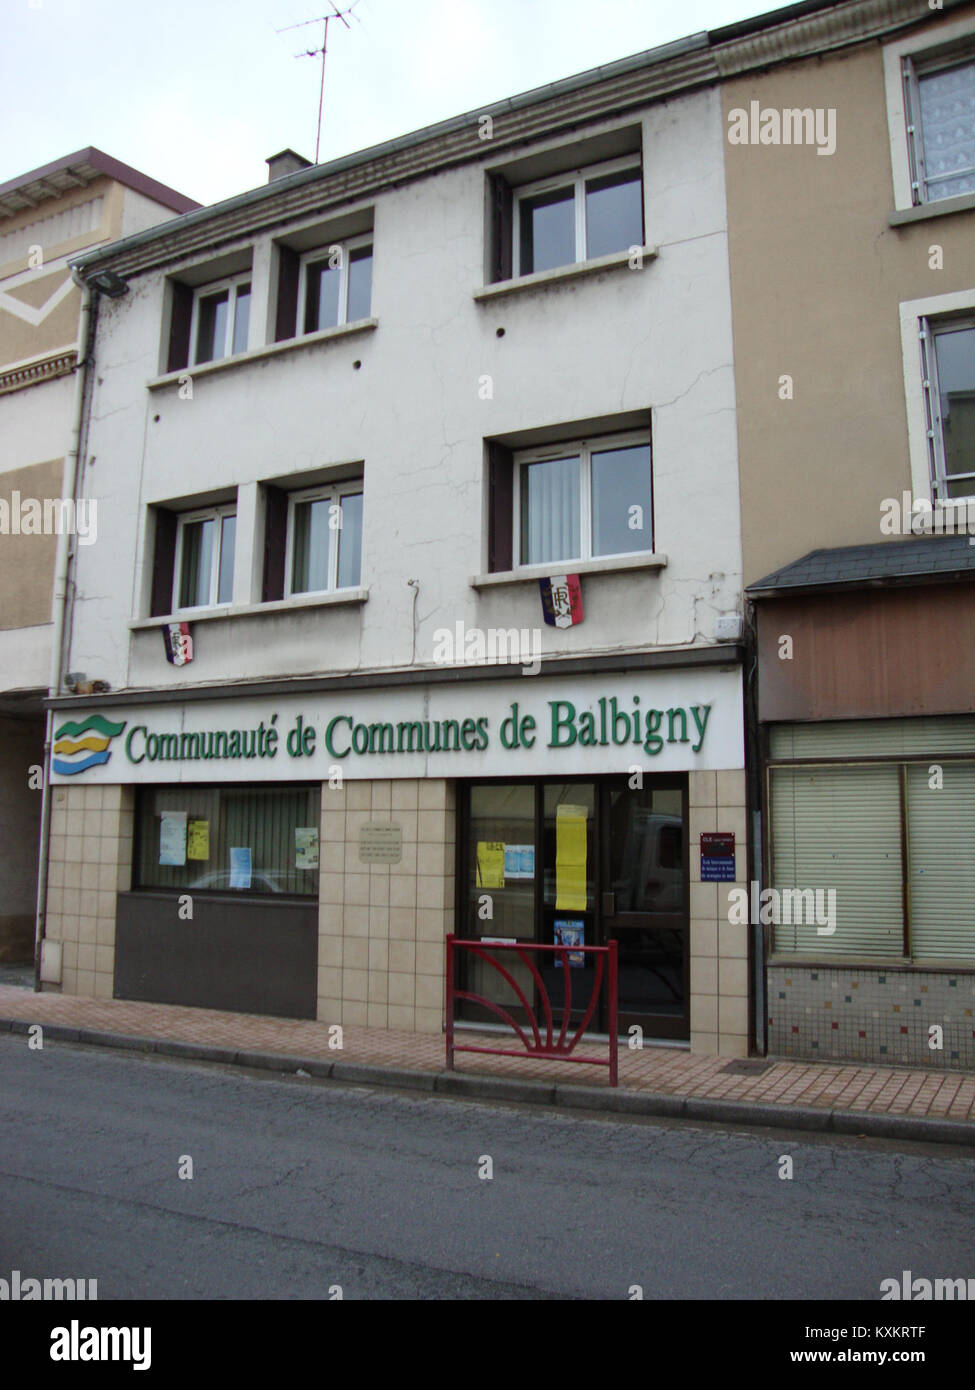 Balbigny (Loire, Fr) maison Communauté des Communes de Balbigny Stock Photo